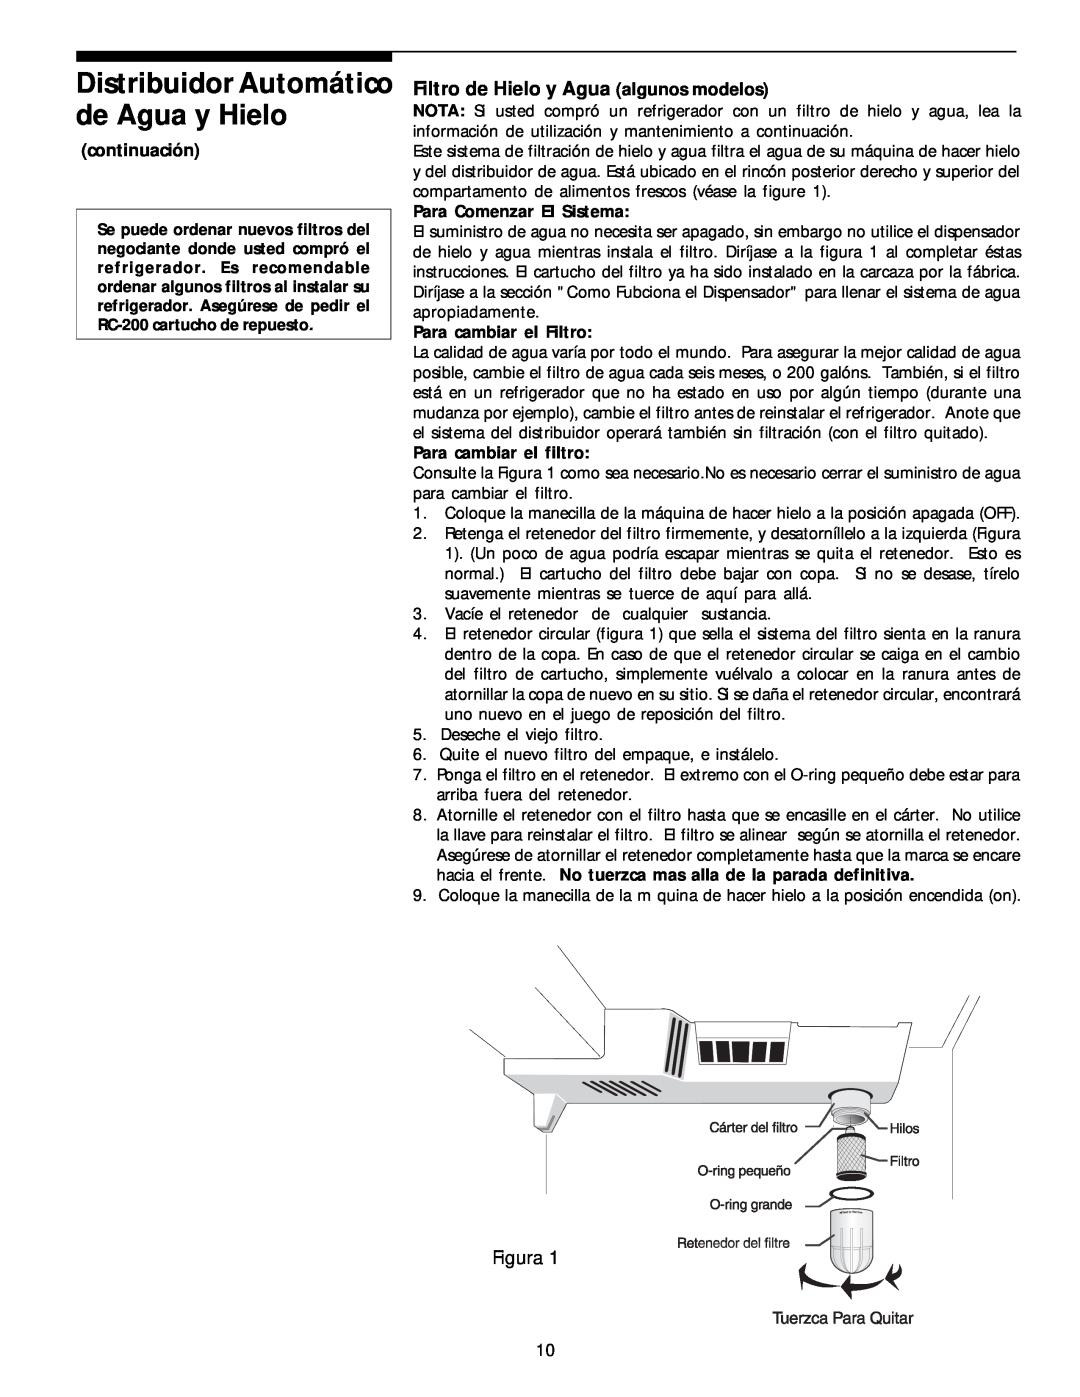 White-Westinghouse 218954301 manual Filtro de Hielo y Agua algunos modelos, Figura, continuación, Para Comenzar El Sistema 